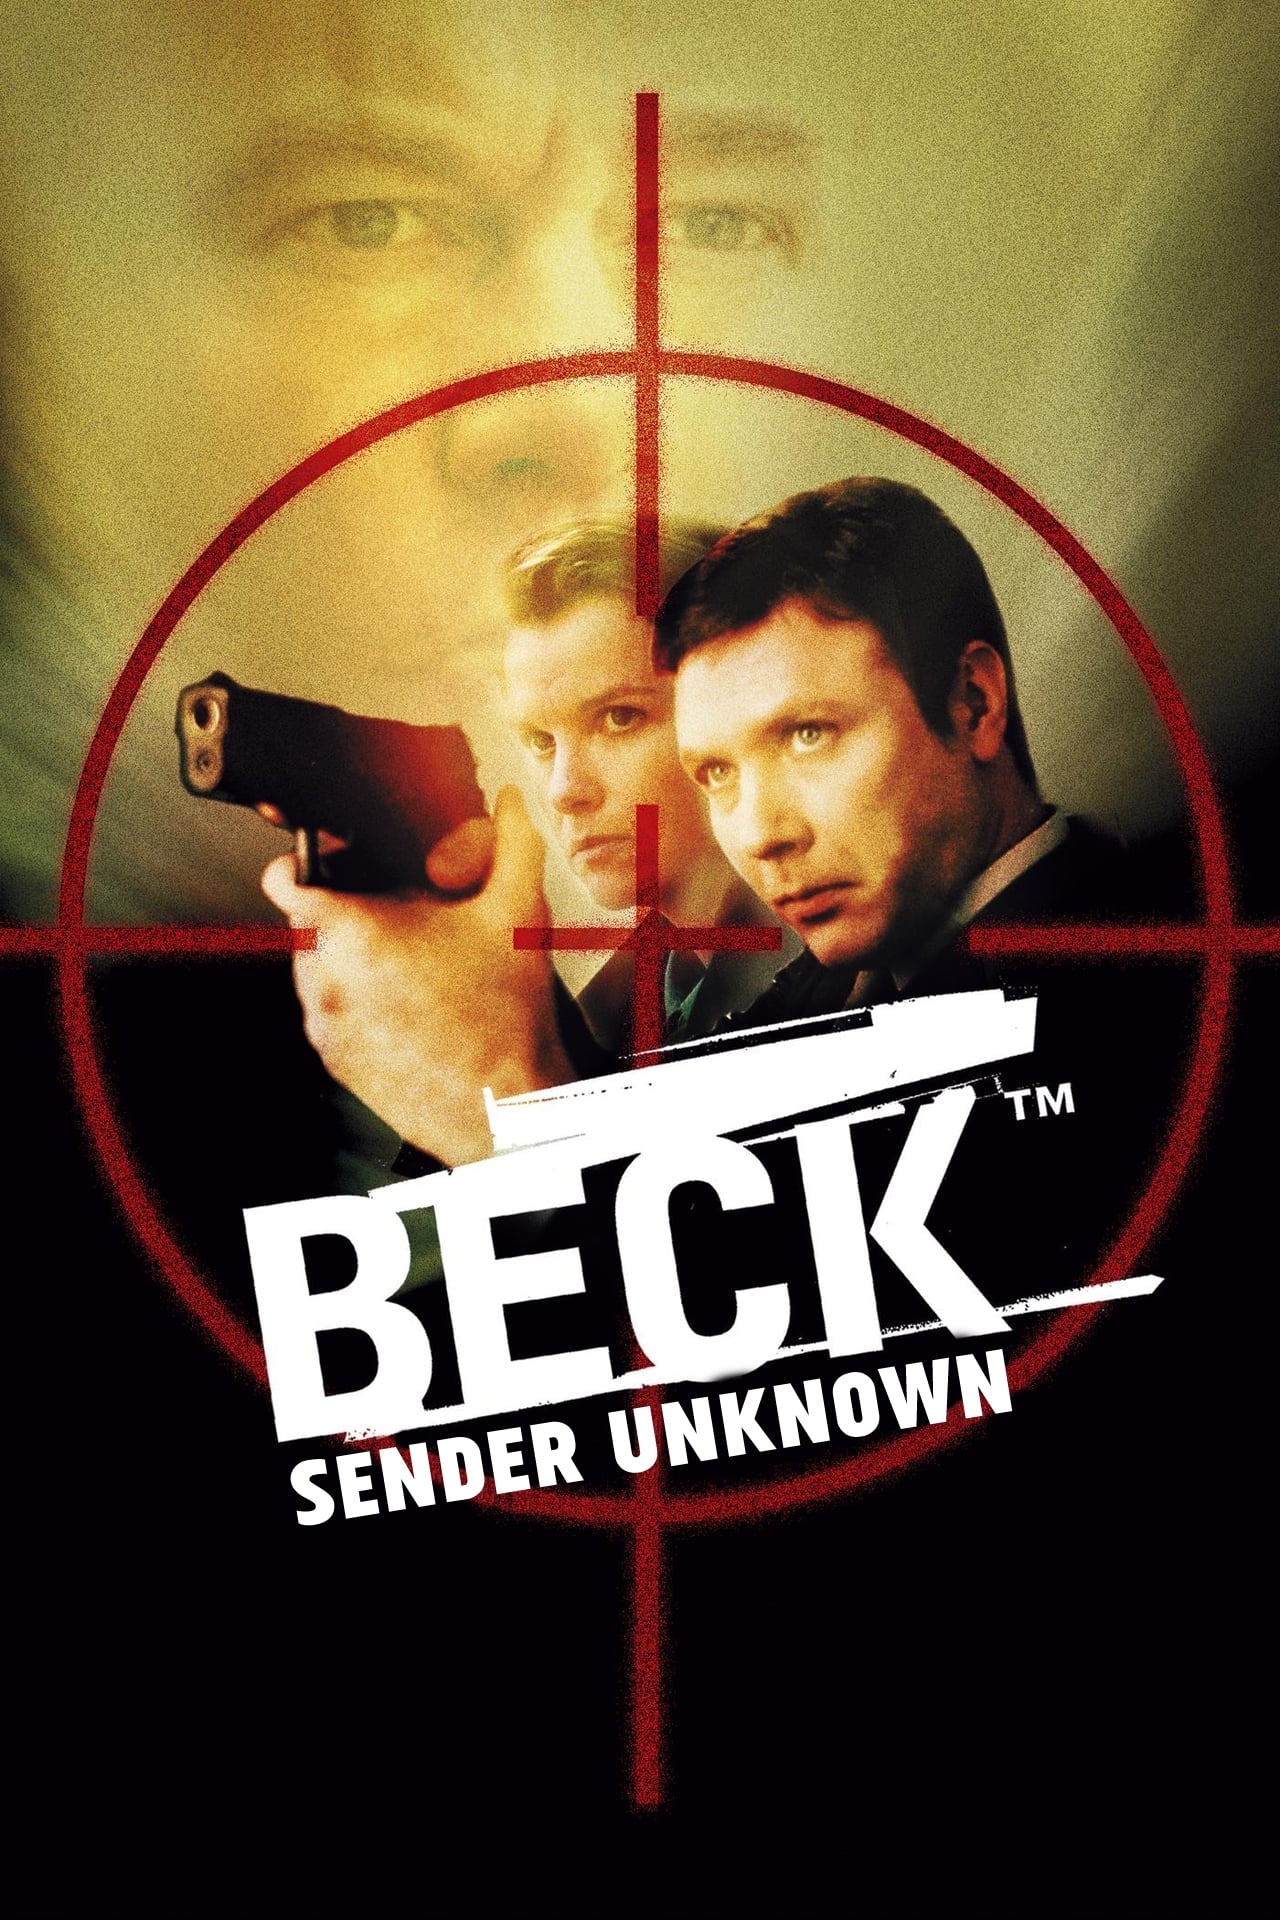 Beck 13 - Sender Unknown